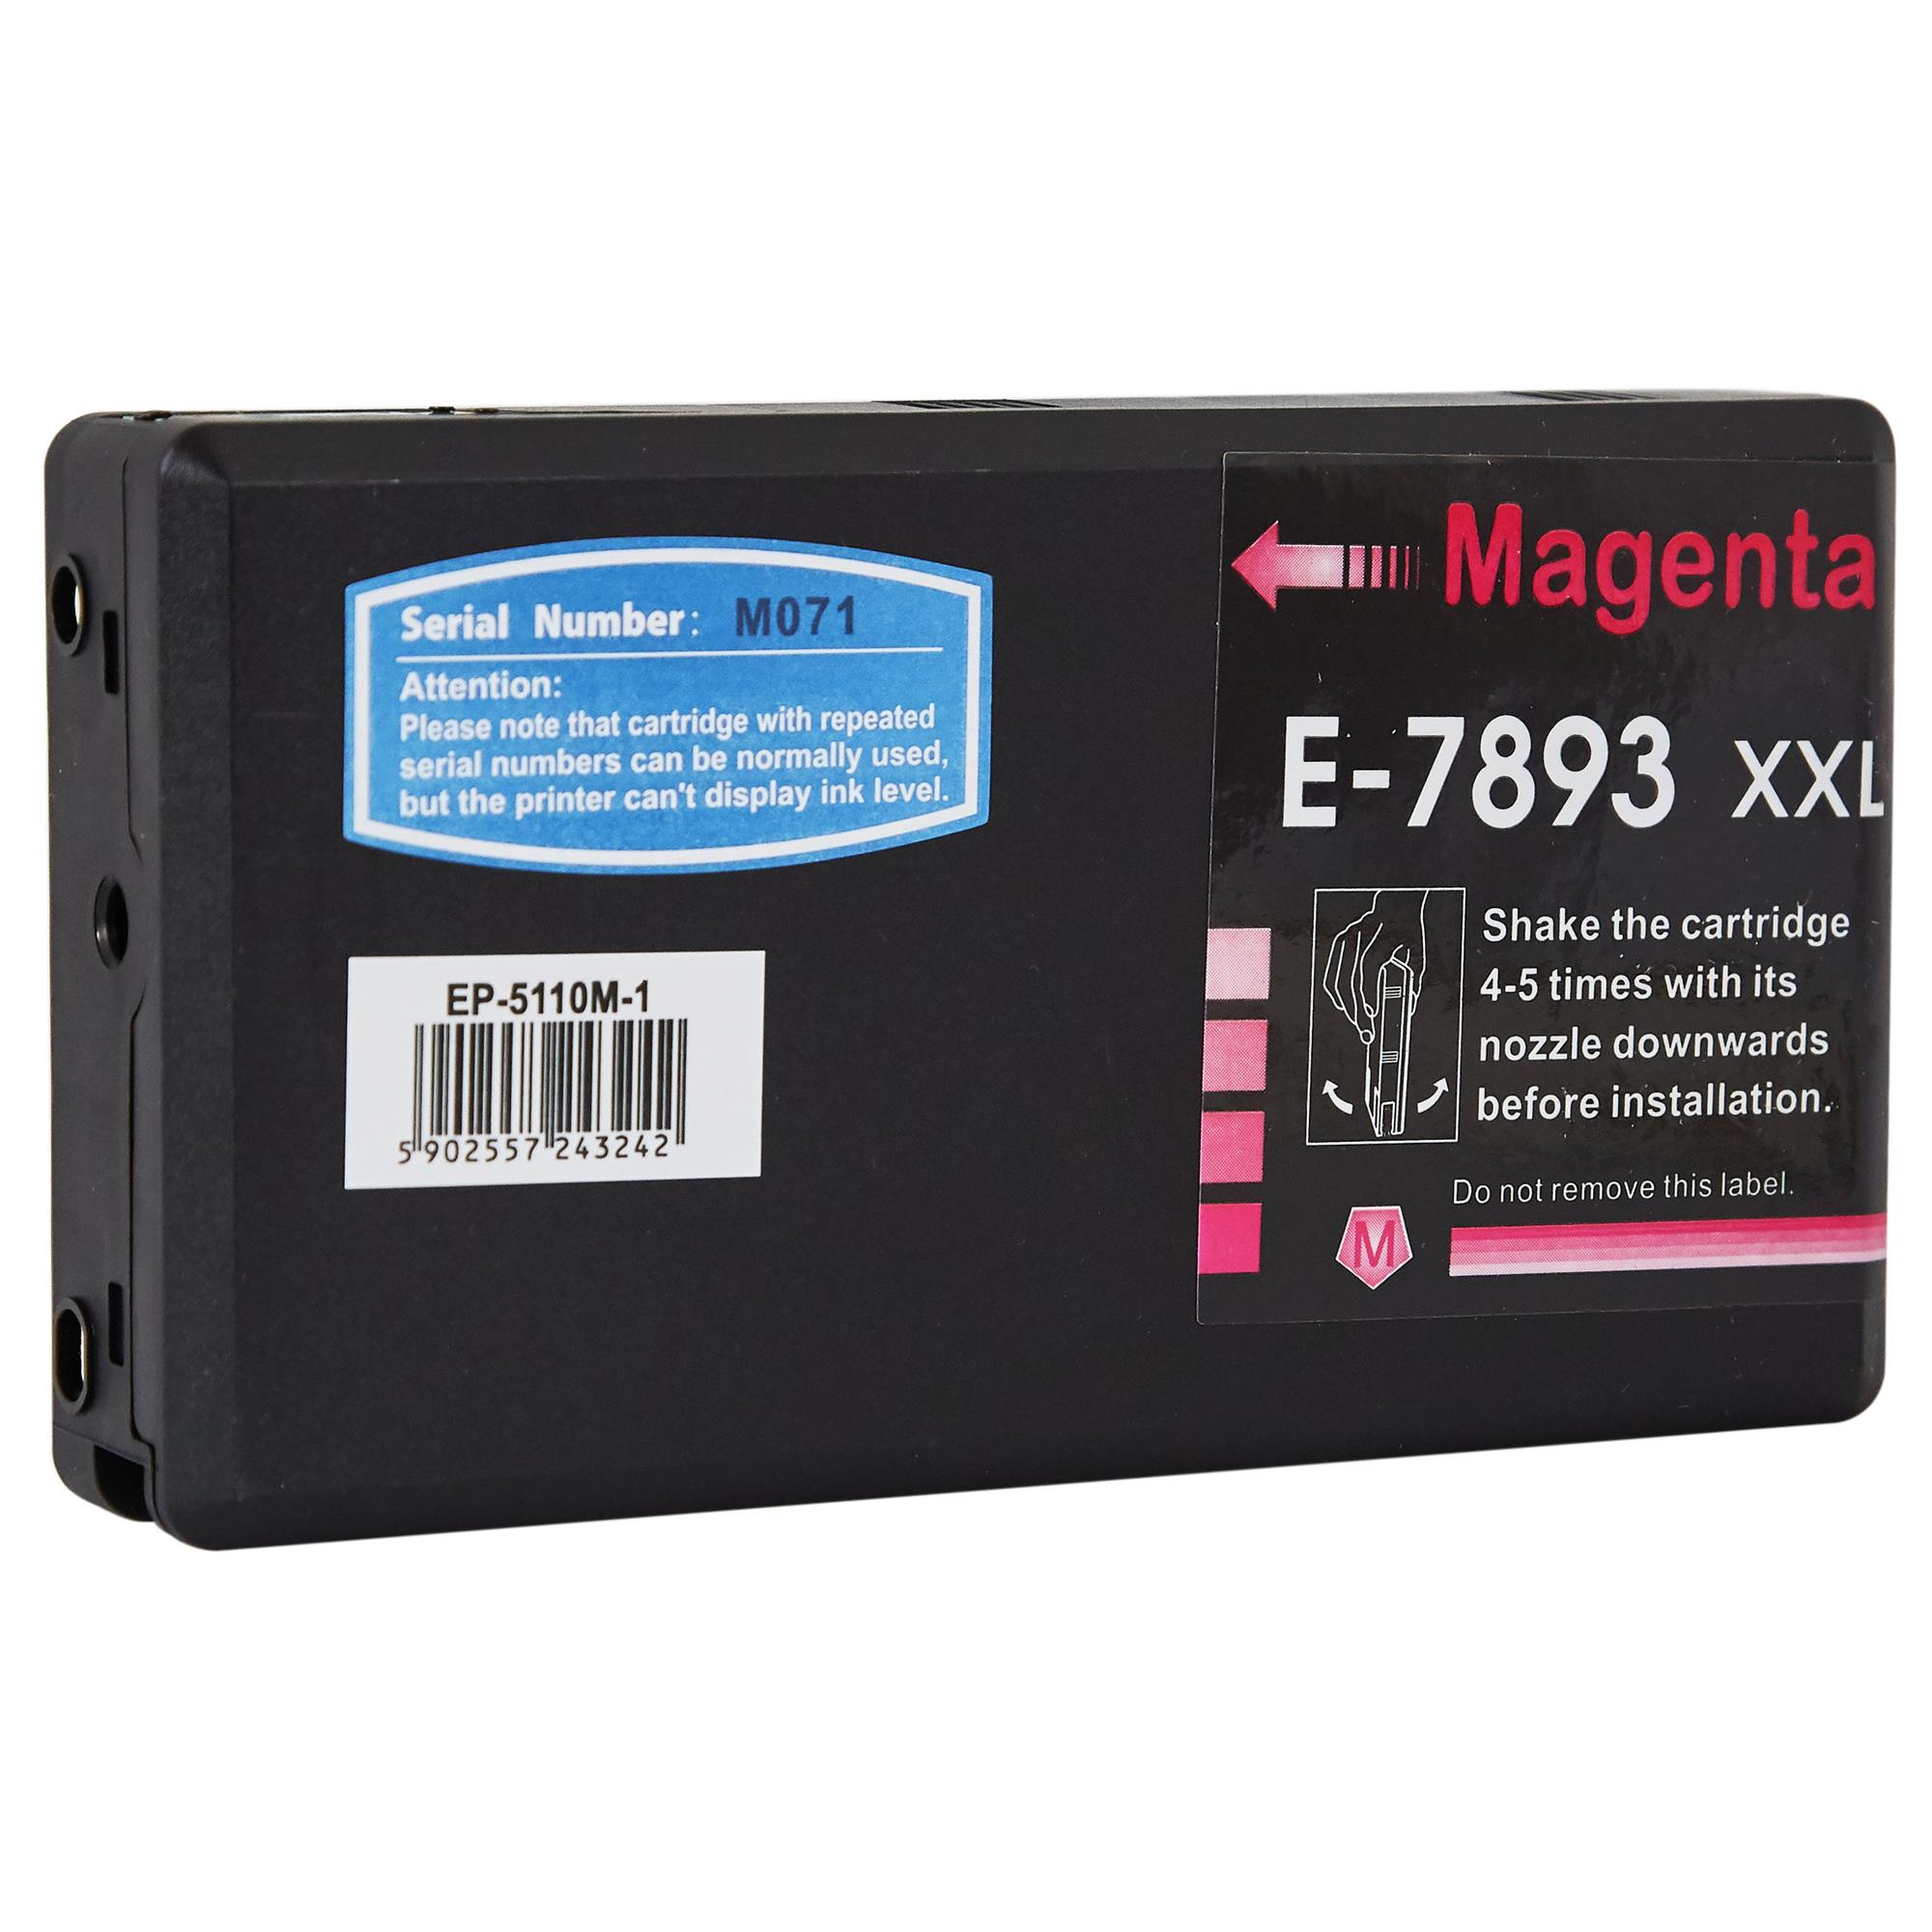 патрон, мастилена касета-глава, мастилница за принтери и печатащи устройства на Epson PRO WF-5690 DWF Ink EP-5110M | C13T789340 / T7893. Ниски цени, прецизно изпълнение, високо качество.